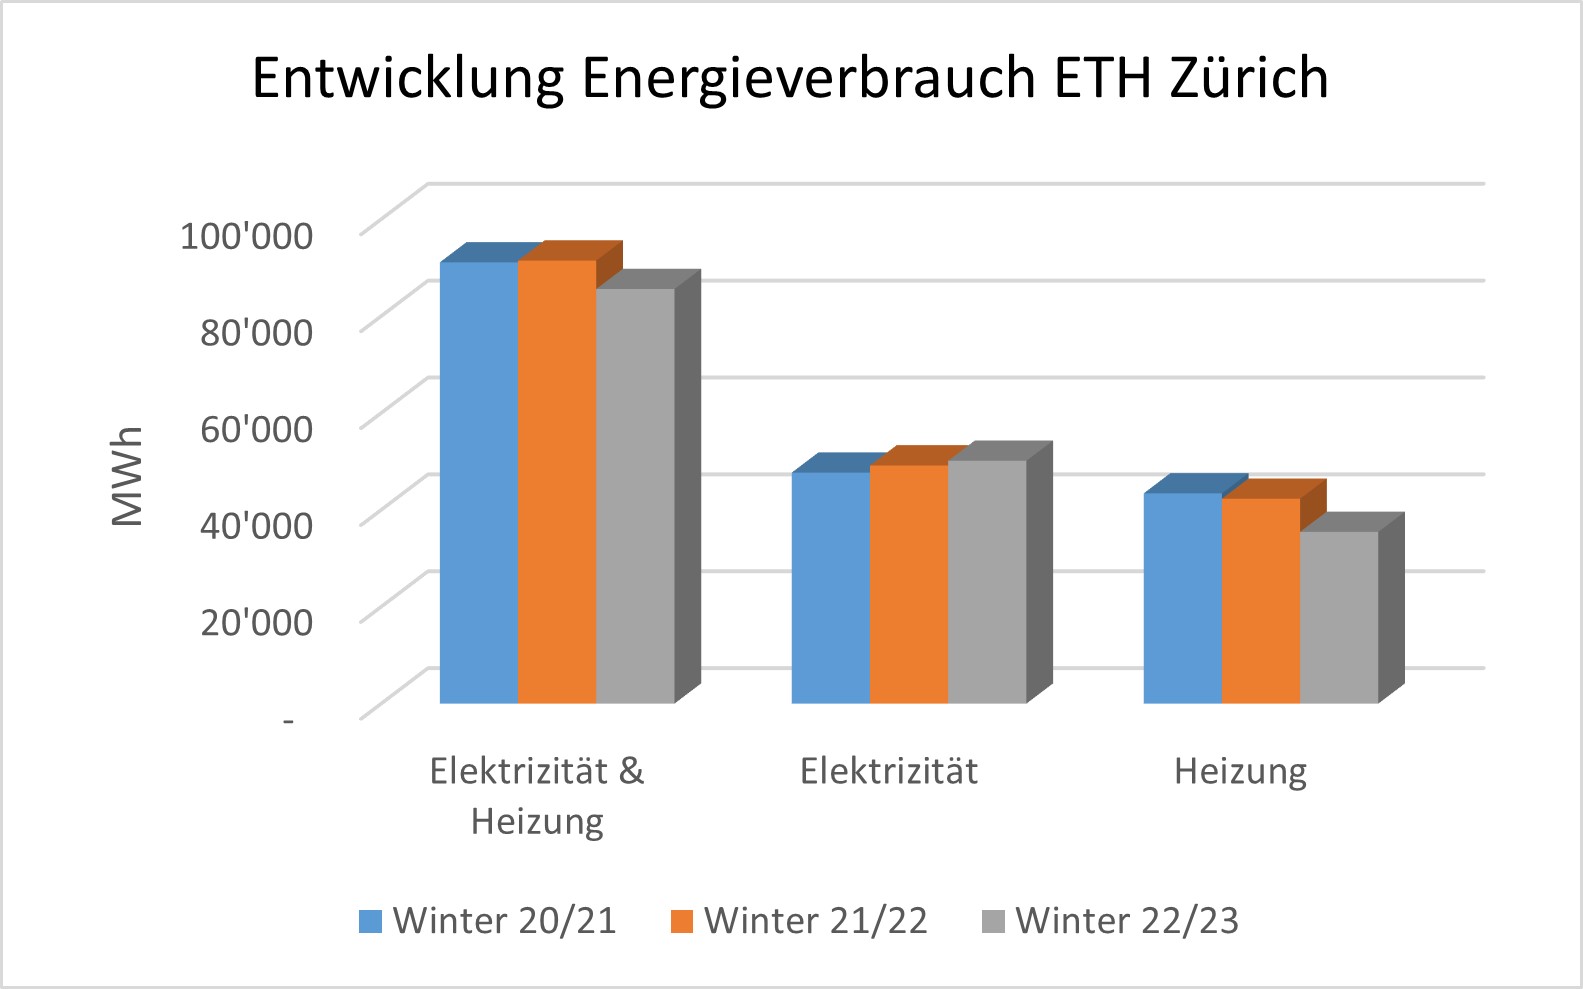 Vergrösserte Ansicht: Grafik mit der Entwicklung des Energieverbrauchs der ETH Zürich